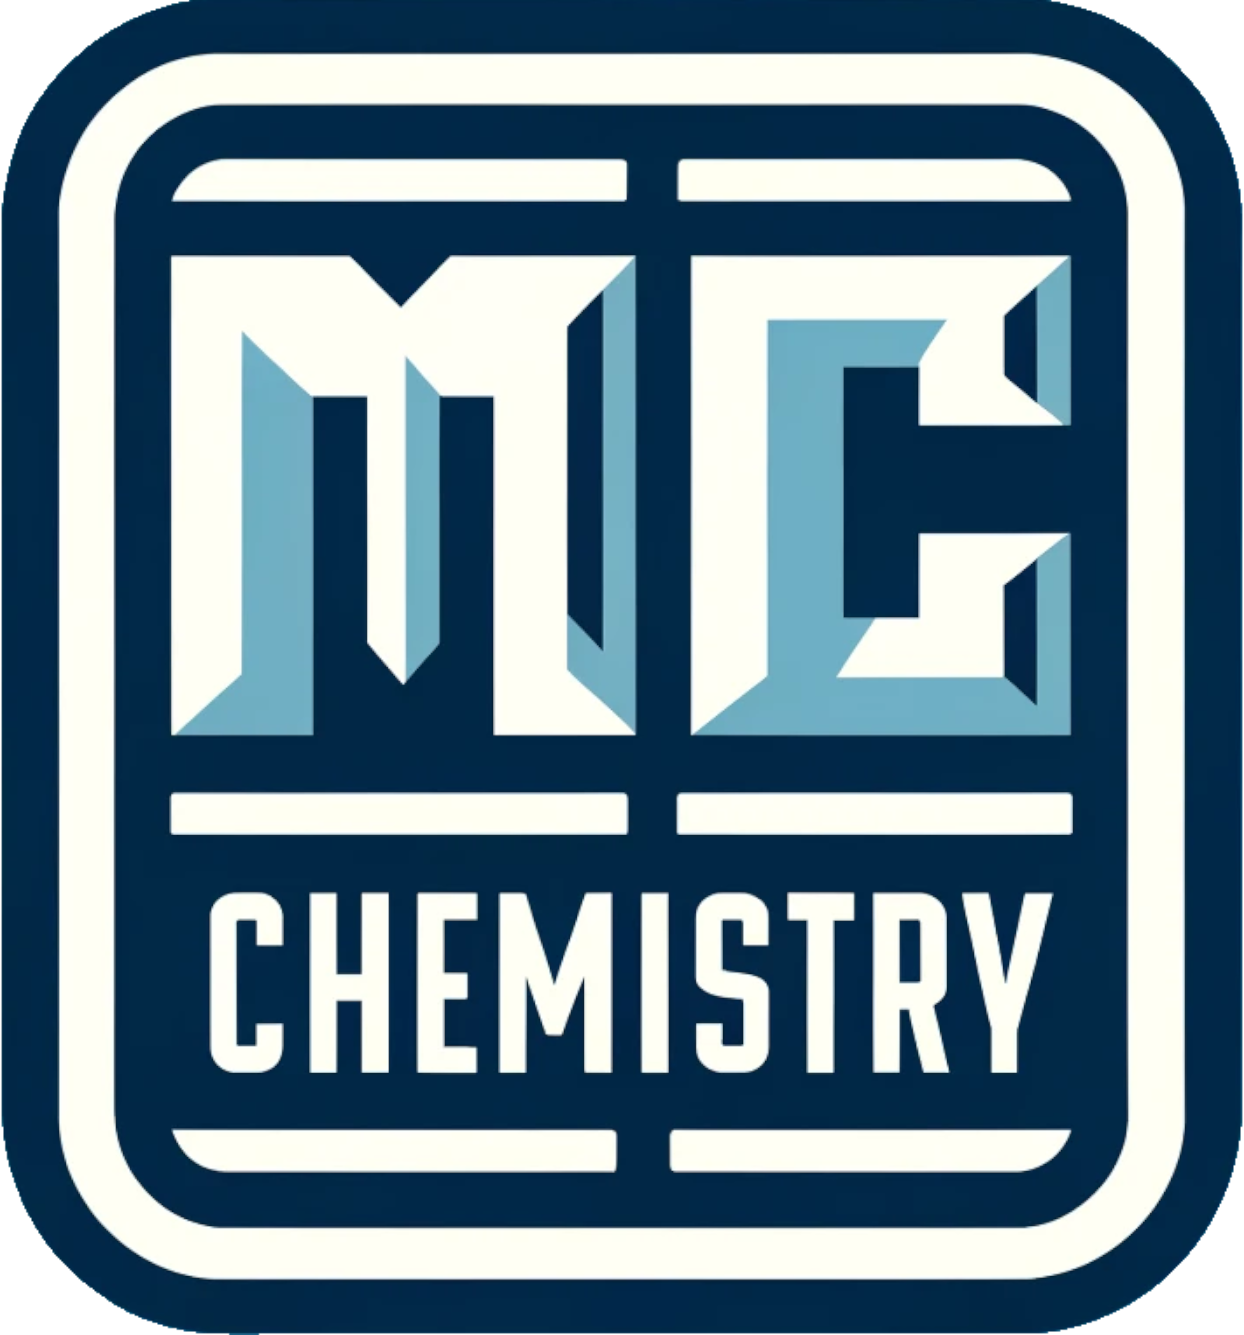 www.musclechemistry.com